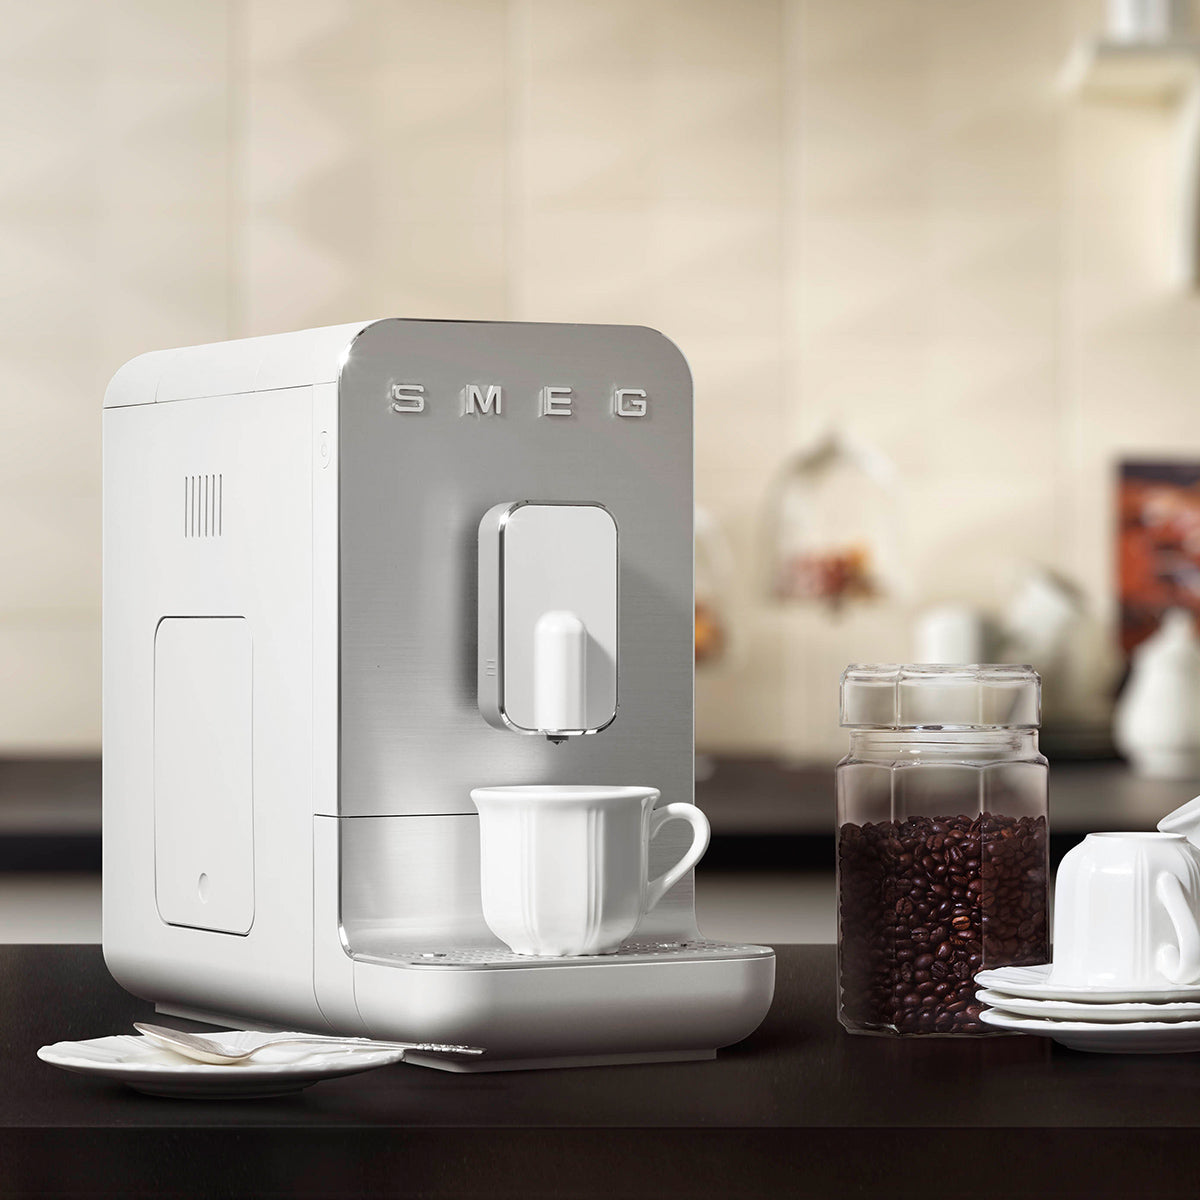 SMEG Cream Semi-Automatic Coffee and Espresso Machine with Milk